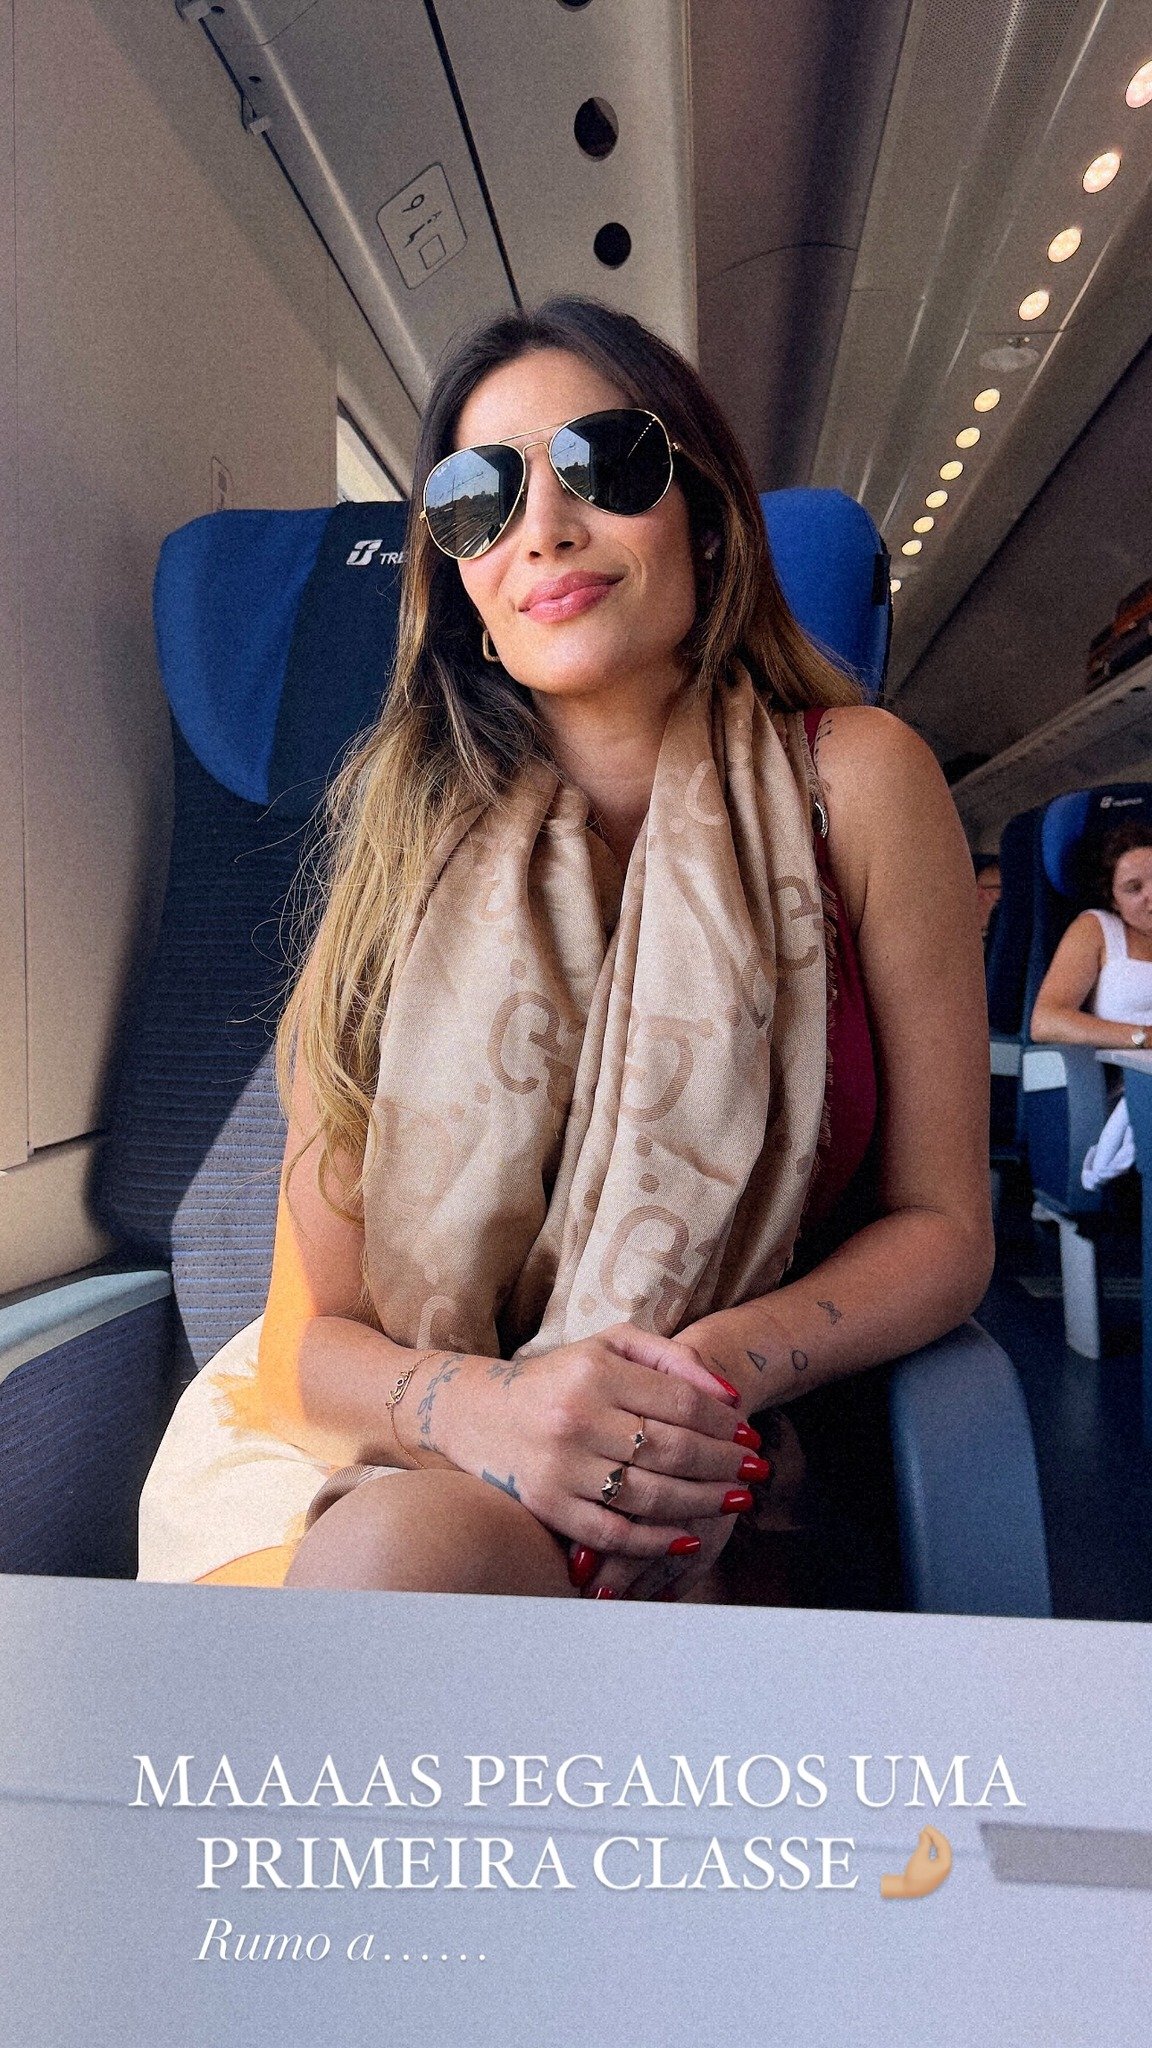 Jessica Beatriz em viagem pela Itália ao lado de sua mãe, Priscila Beatriz. Reprodução/Instagram